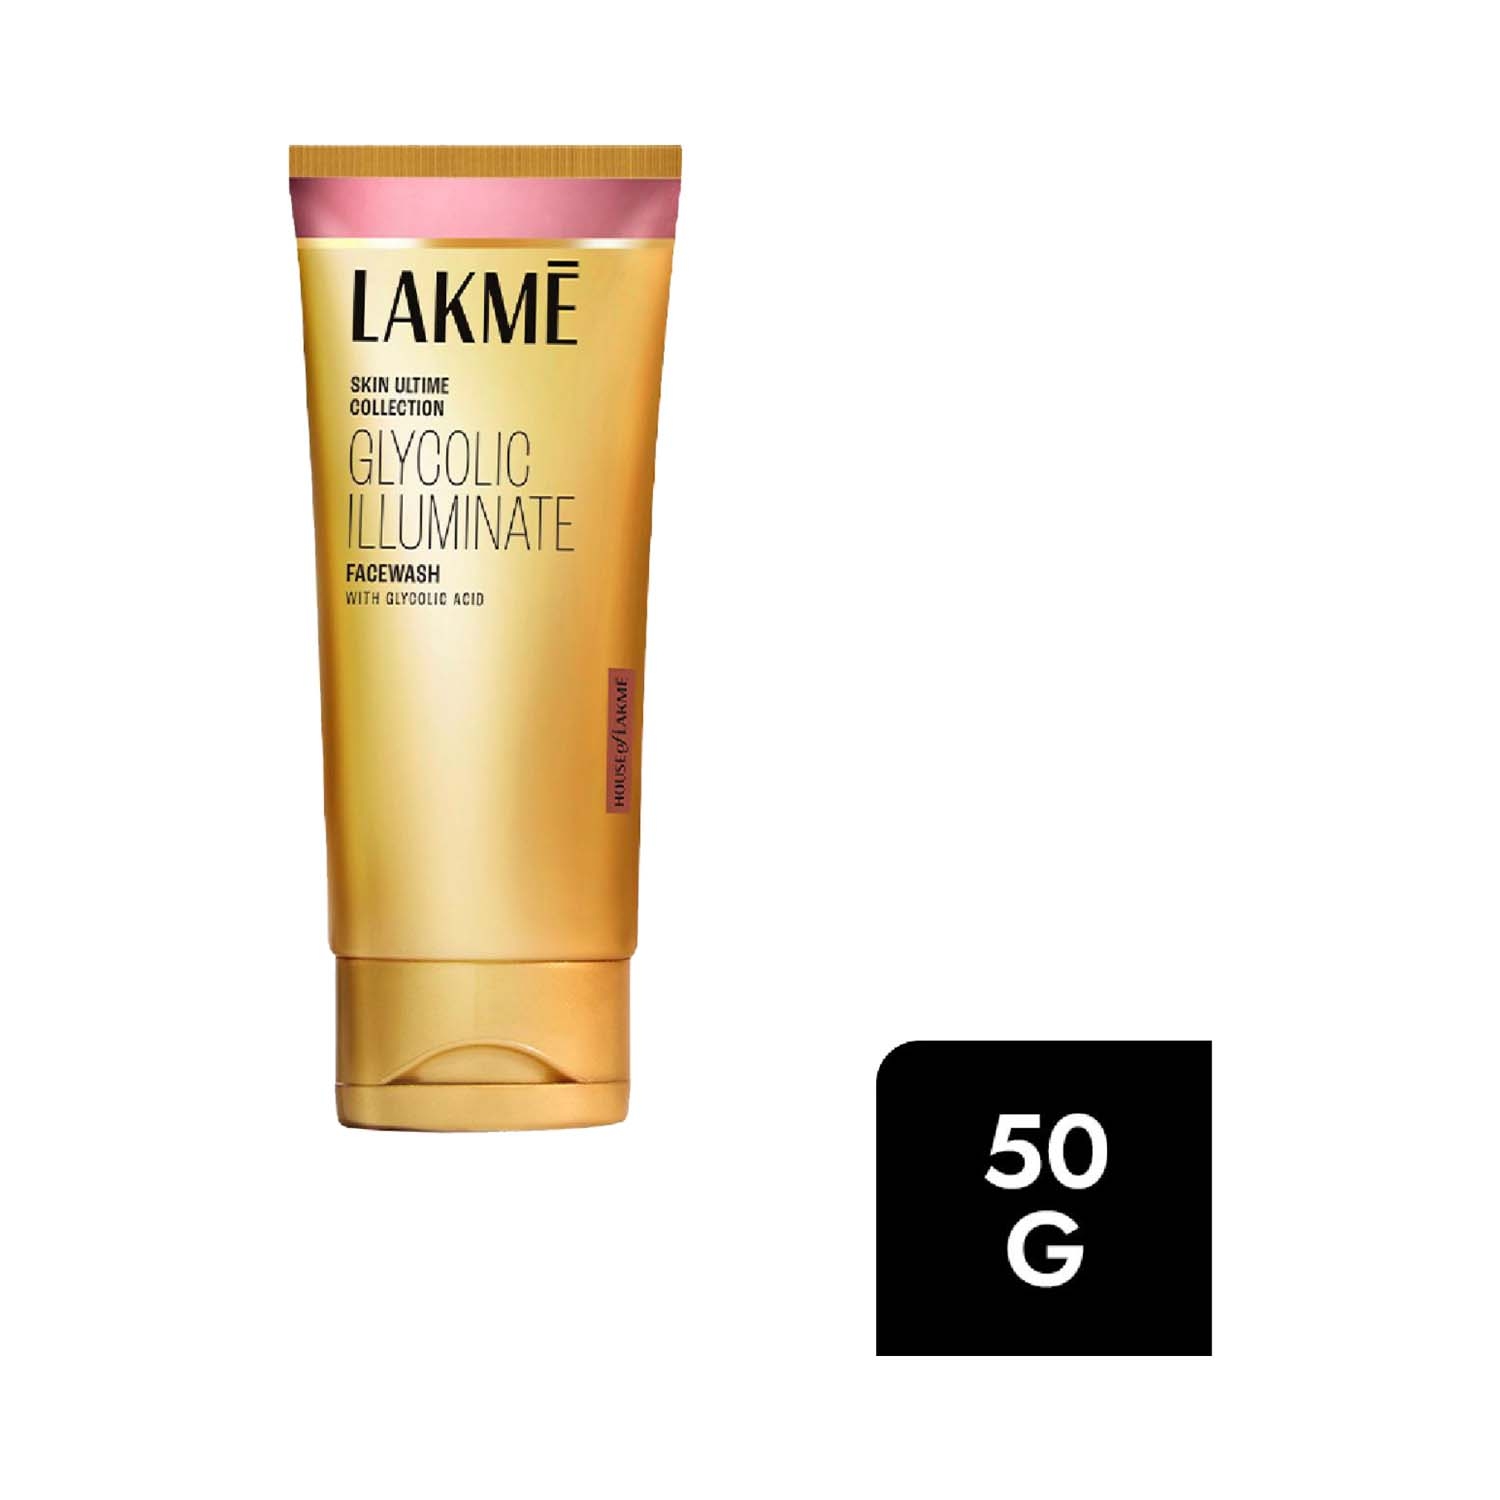 Lakme | Lakme Illuminate Facewash With Glycolic Acid For Gentle Exfoliation & Illuminated Skin (50ml)